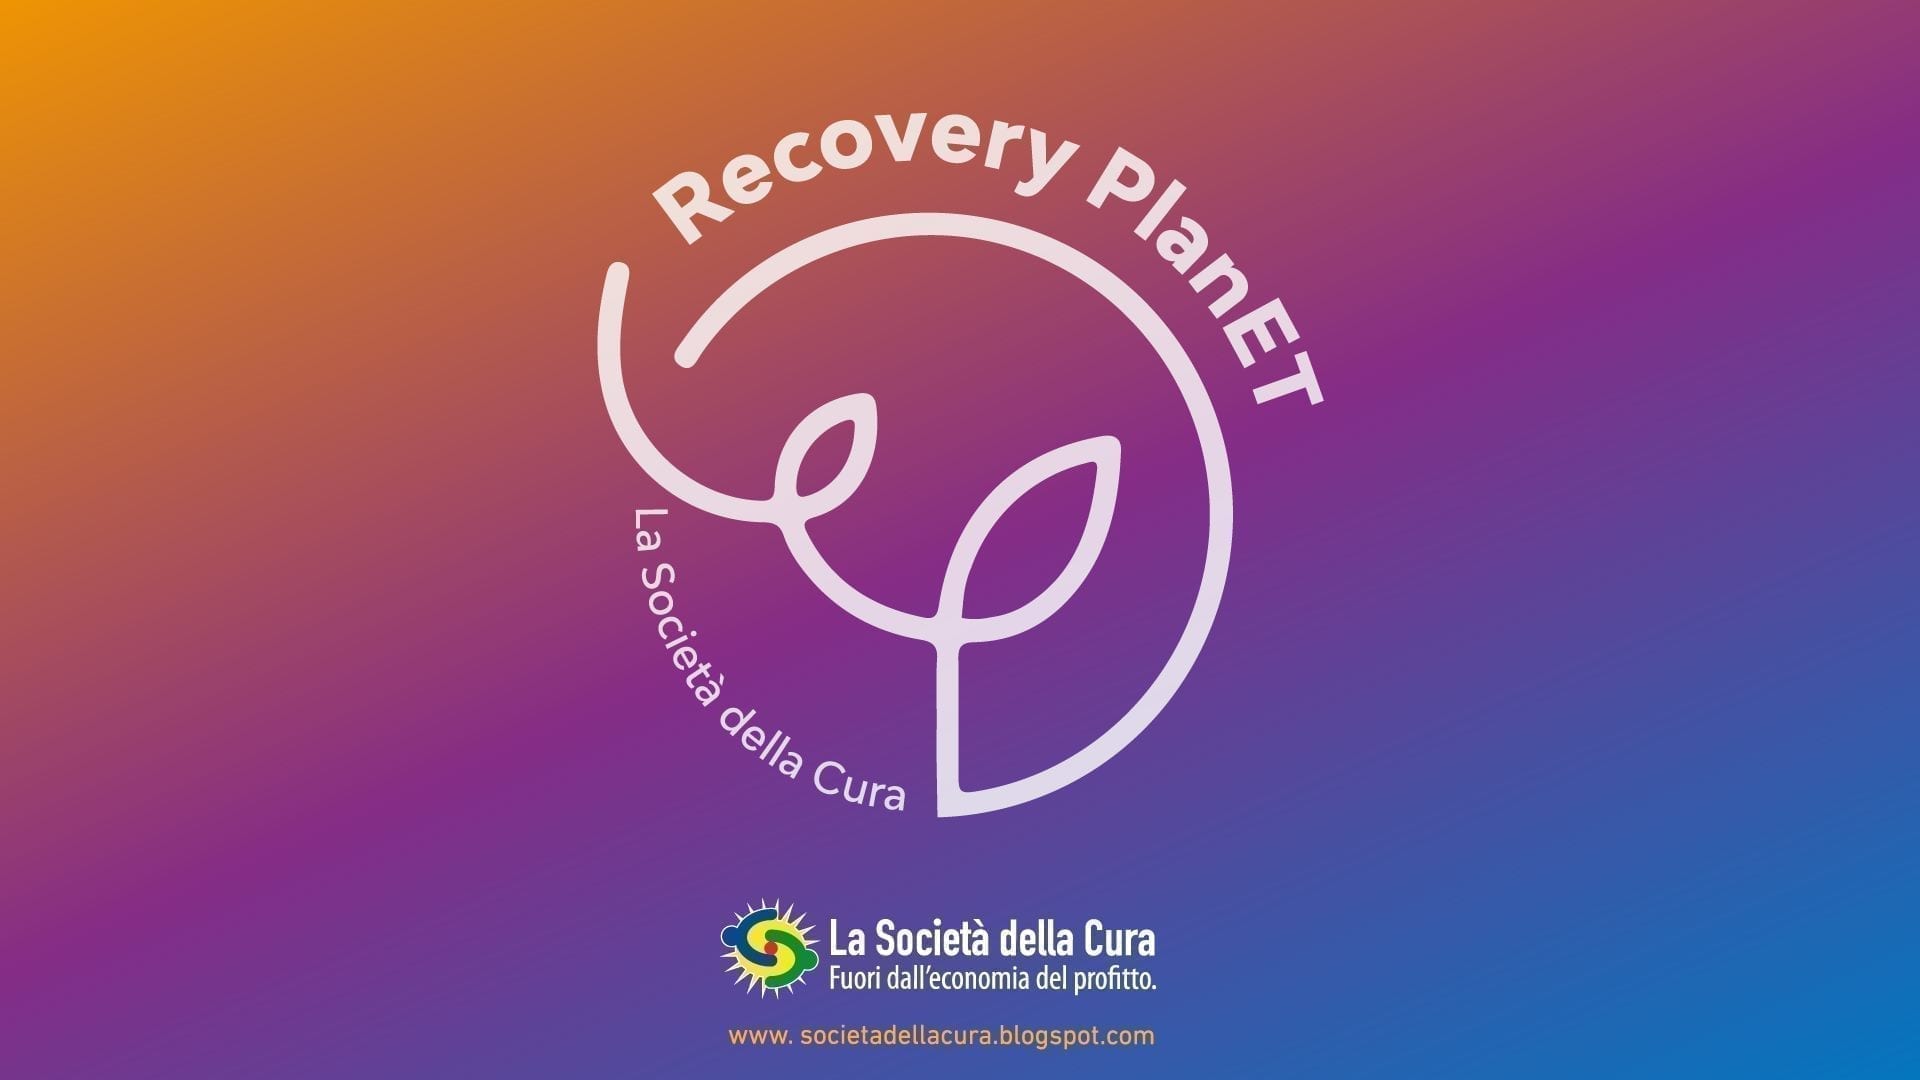 La Società della Cura presenta il suo “Recovery Planet” in un evento online